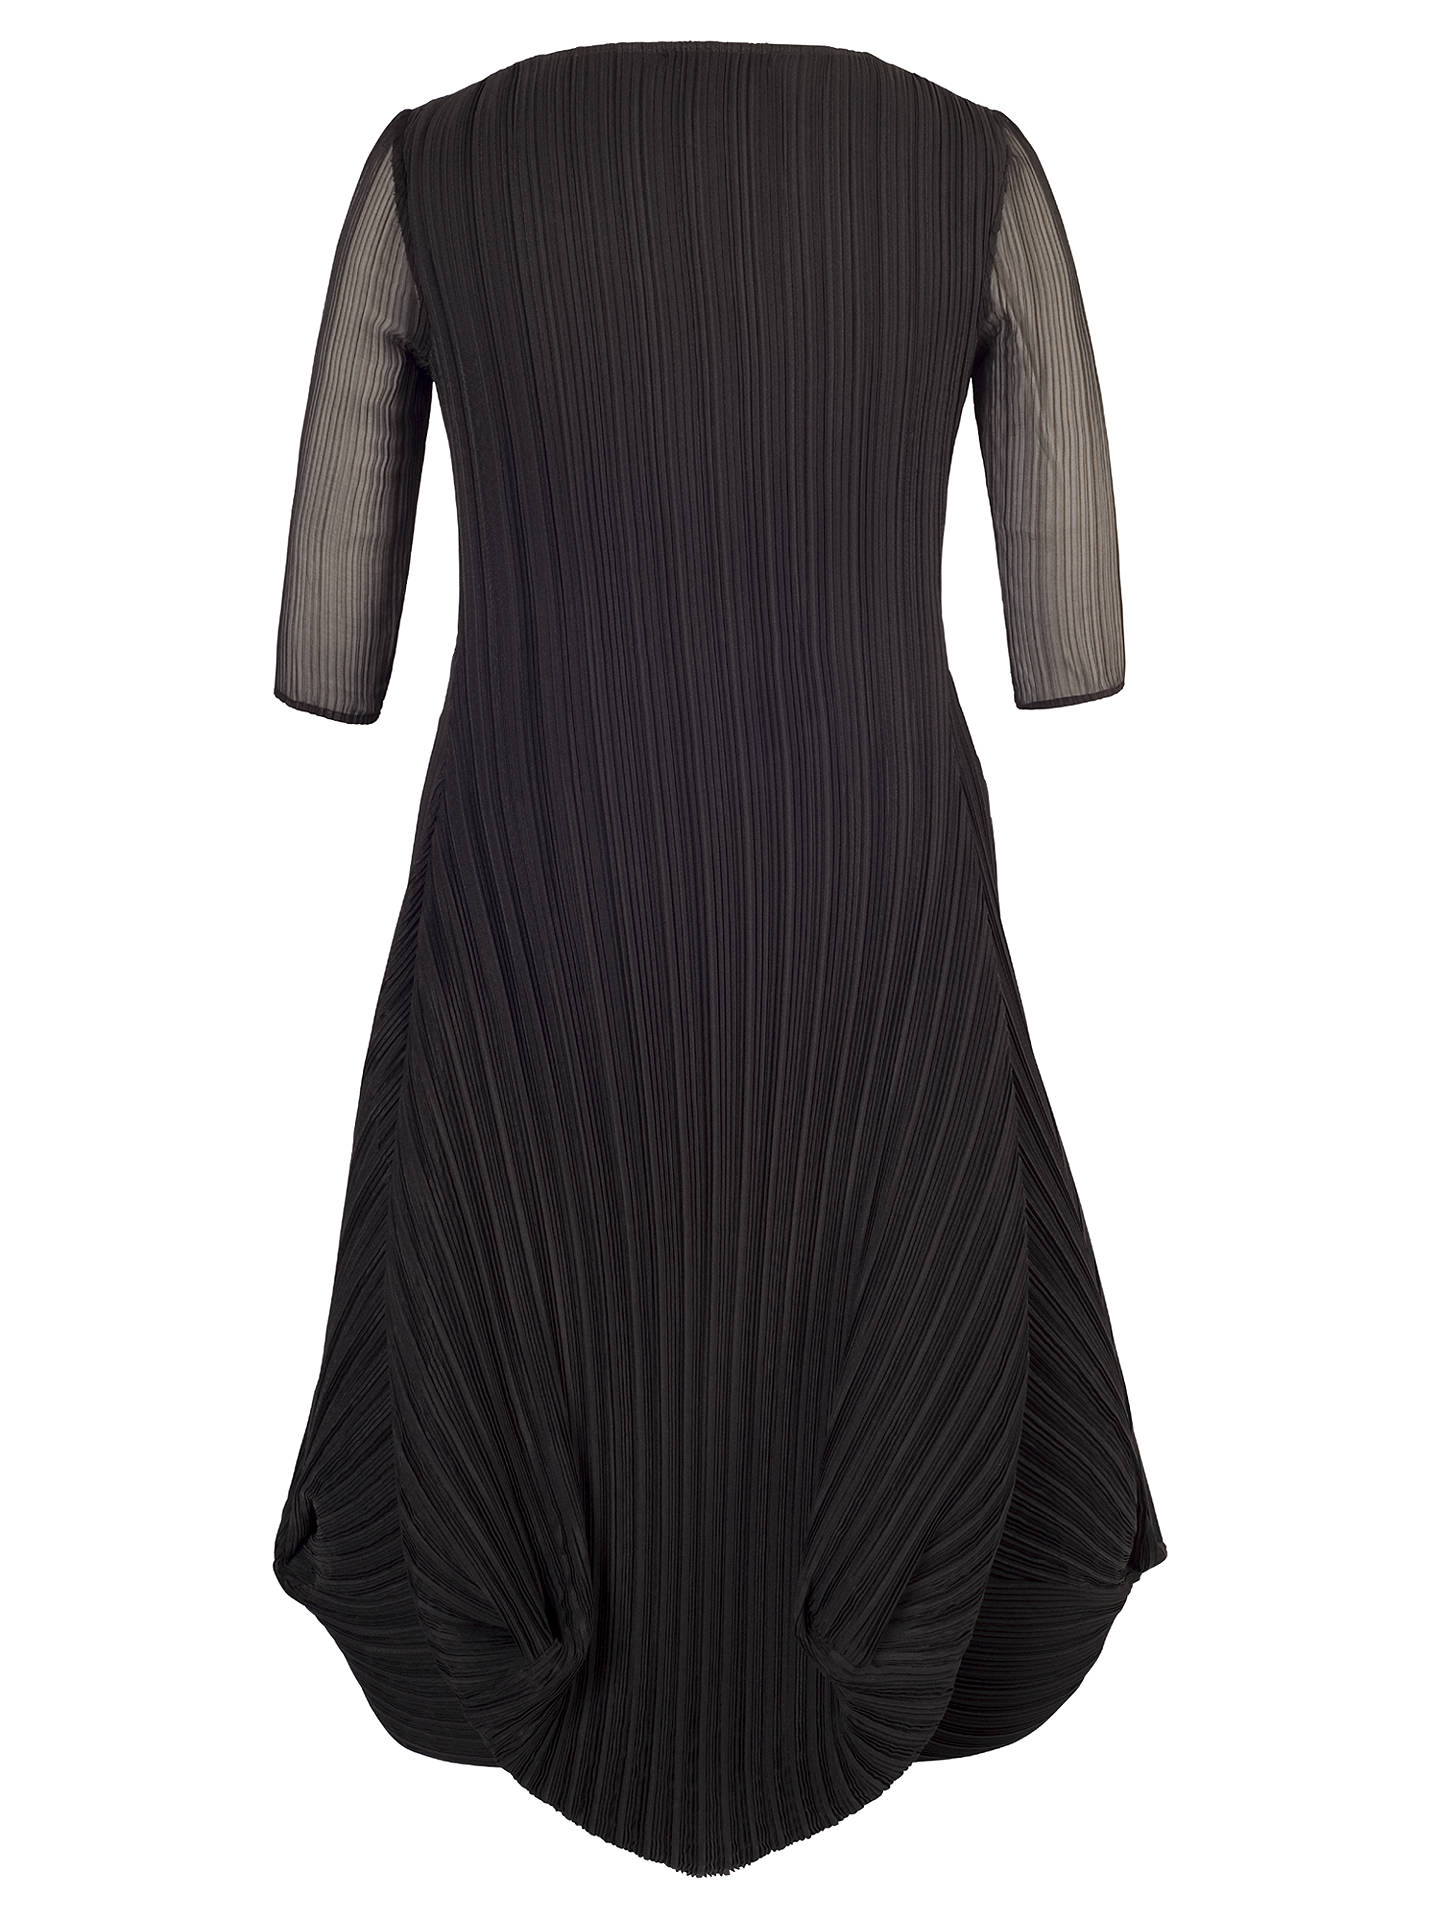 Chesca Black Crush Pleat Crepe Drape Hem Dress at John Lewis & Partners